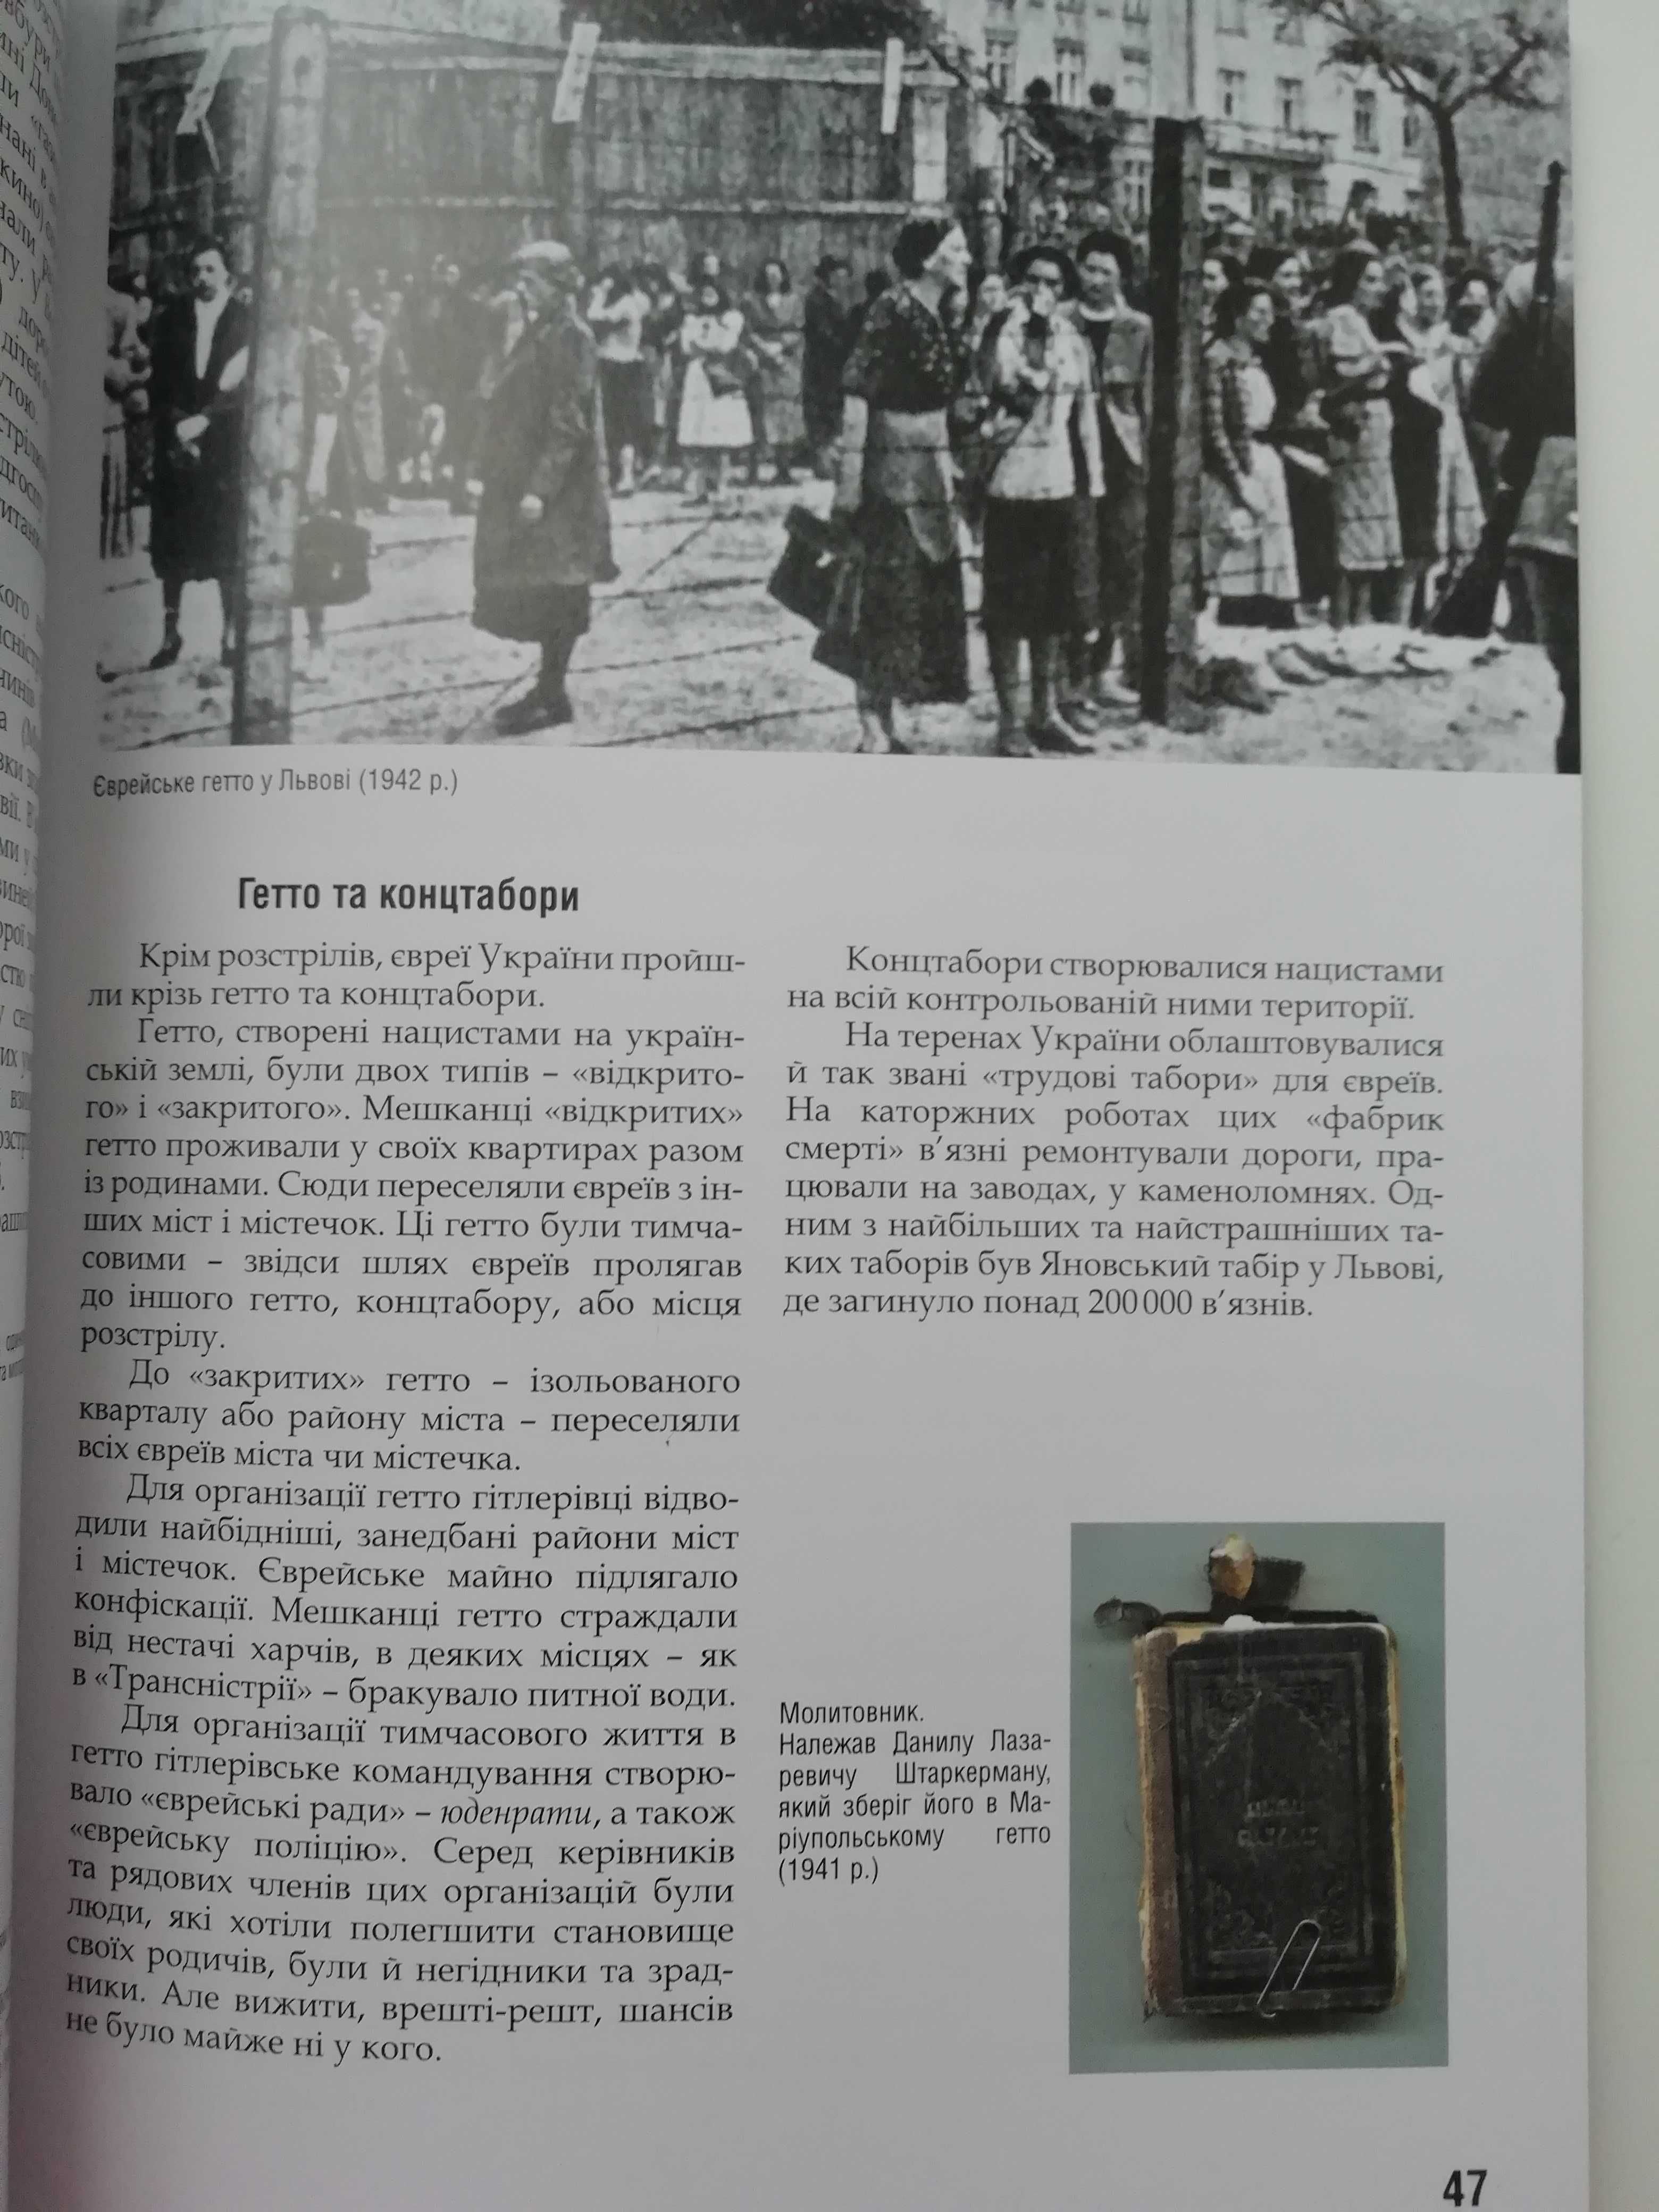 Перекажіть це дітям вашимКнига про Голокост в Україні 1933-1945История